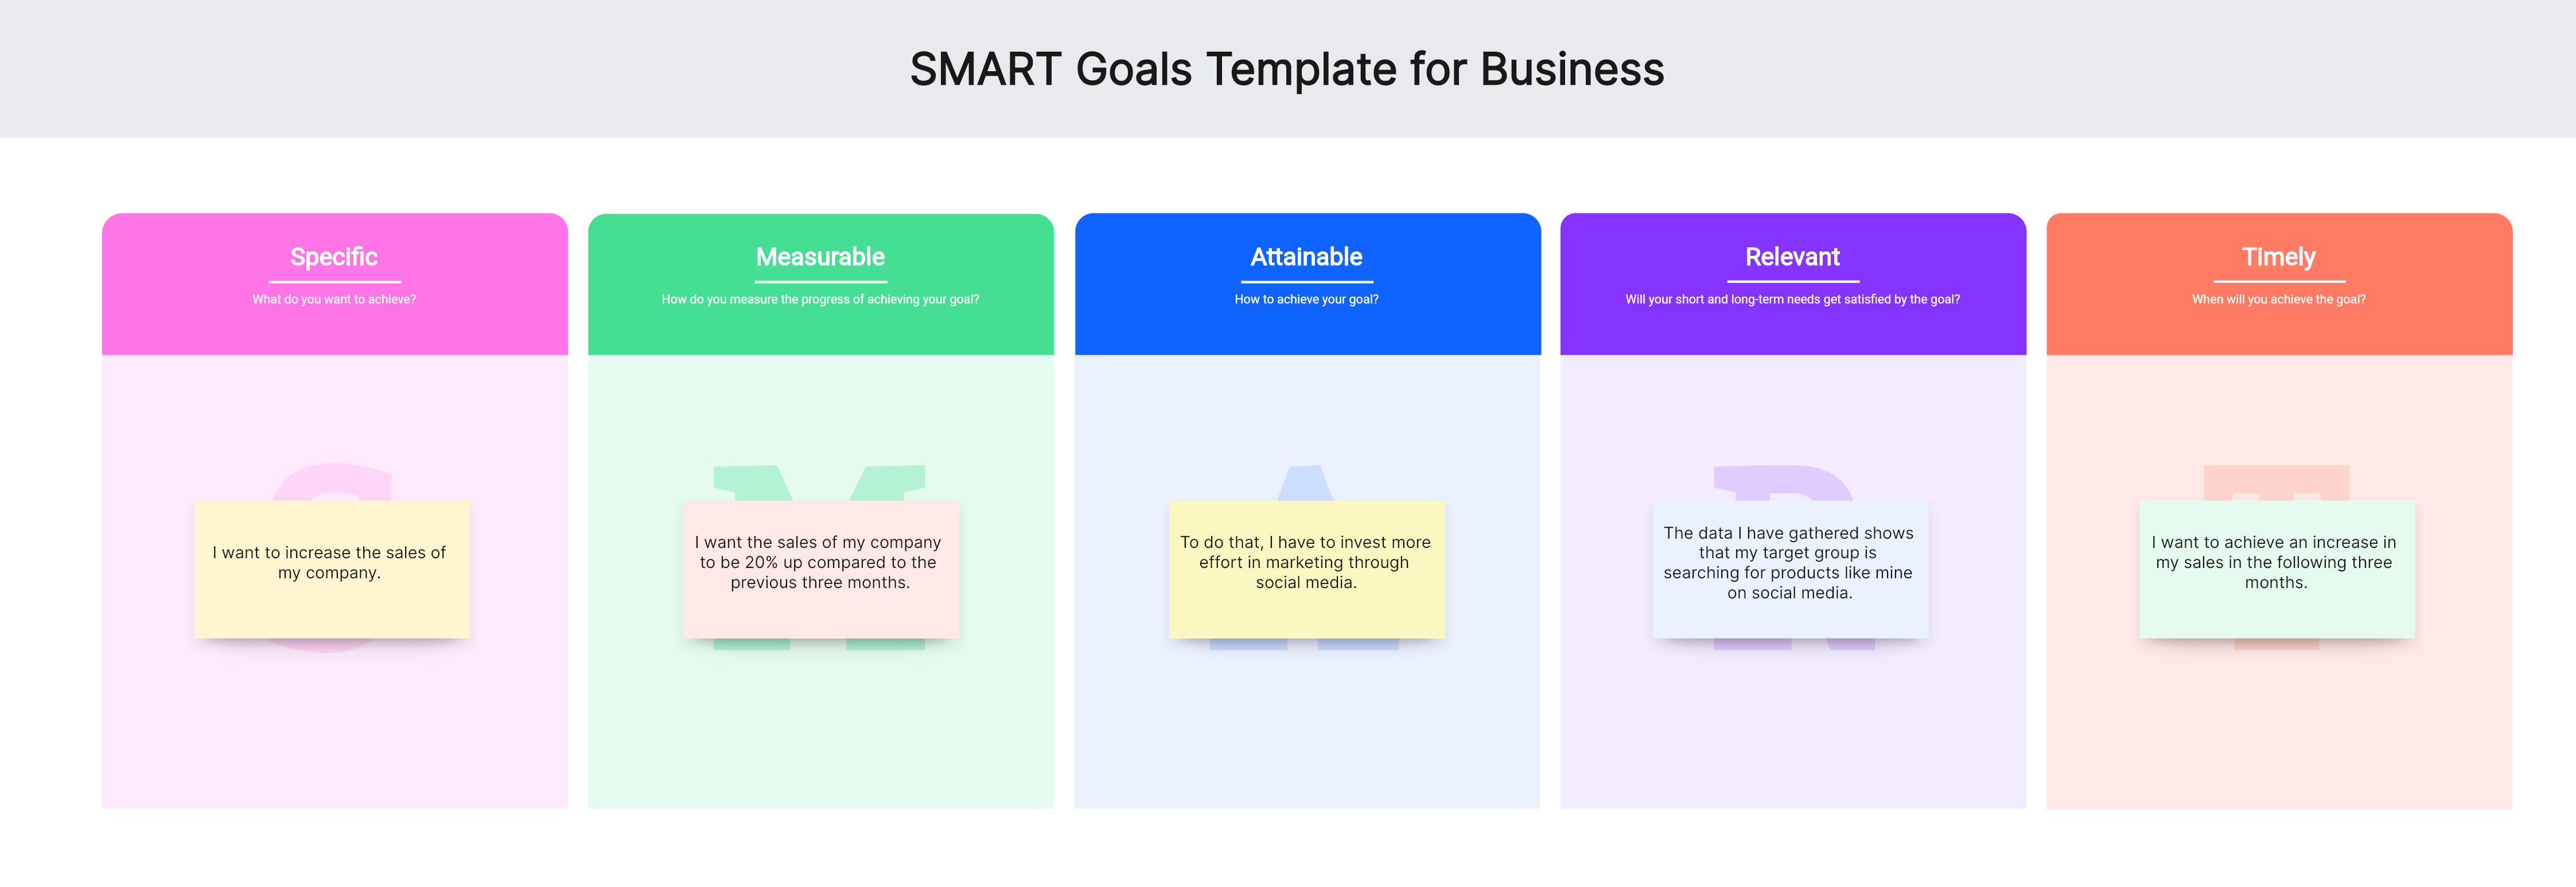 smart goals template business